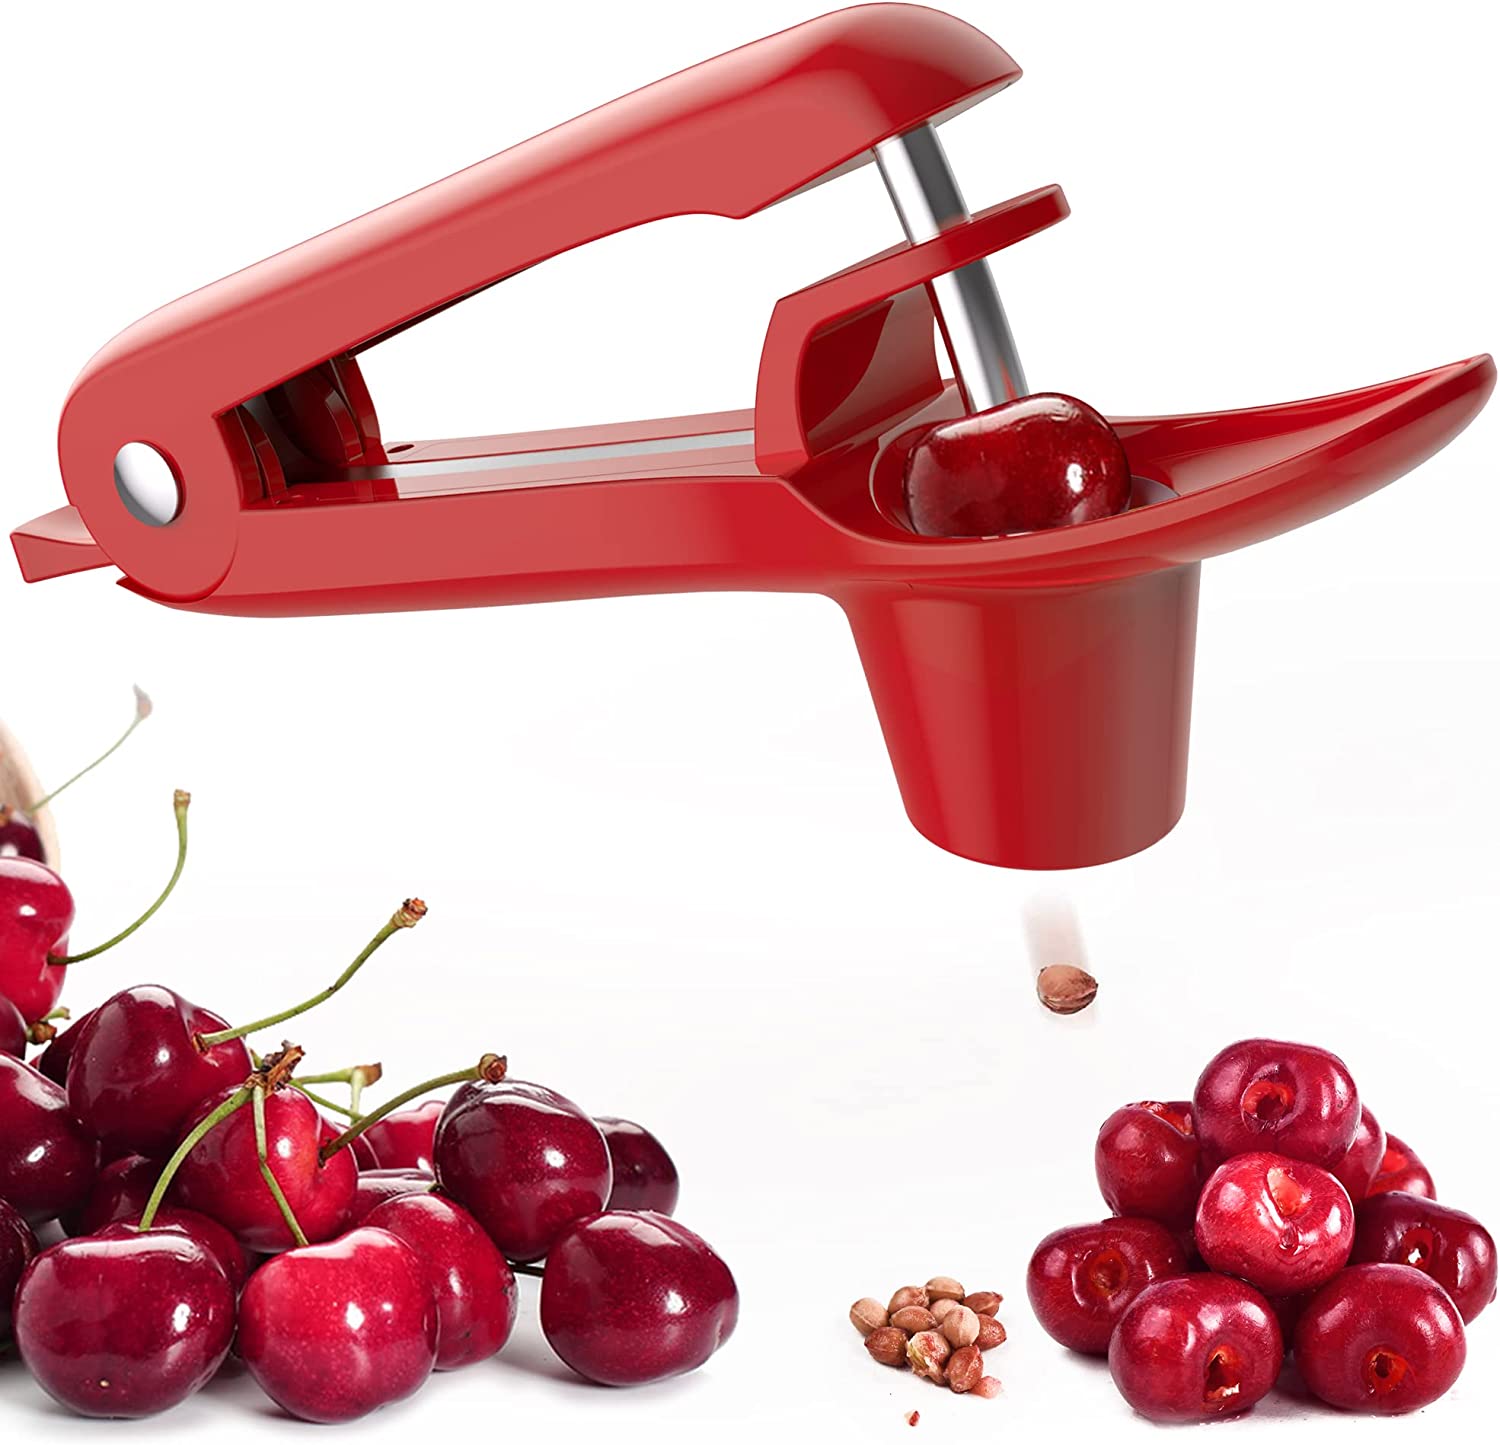 Ordekcity Dishwasher Safe Cherry Pitter